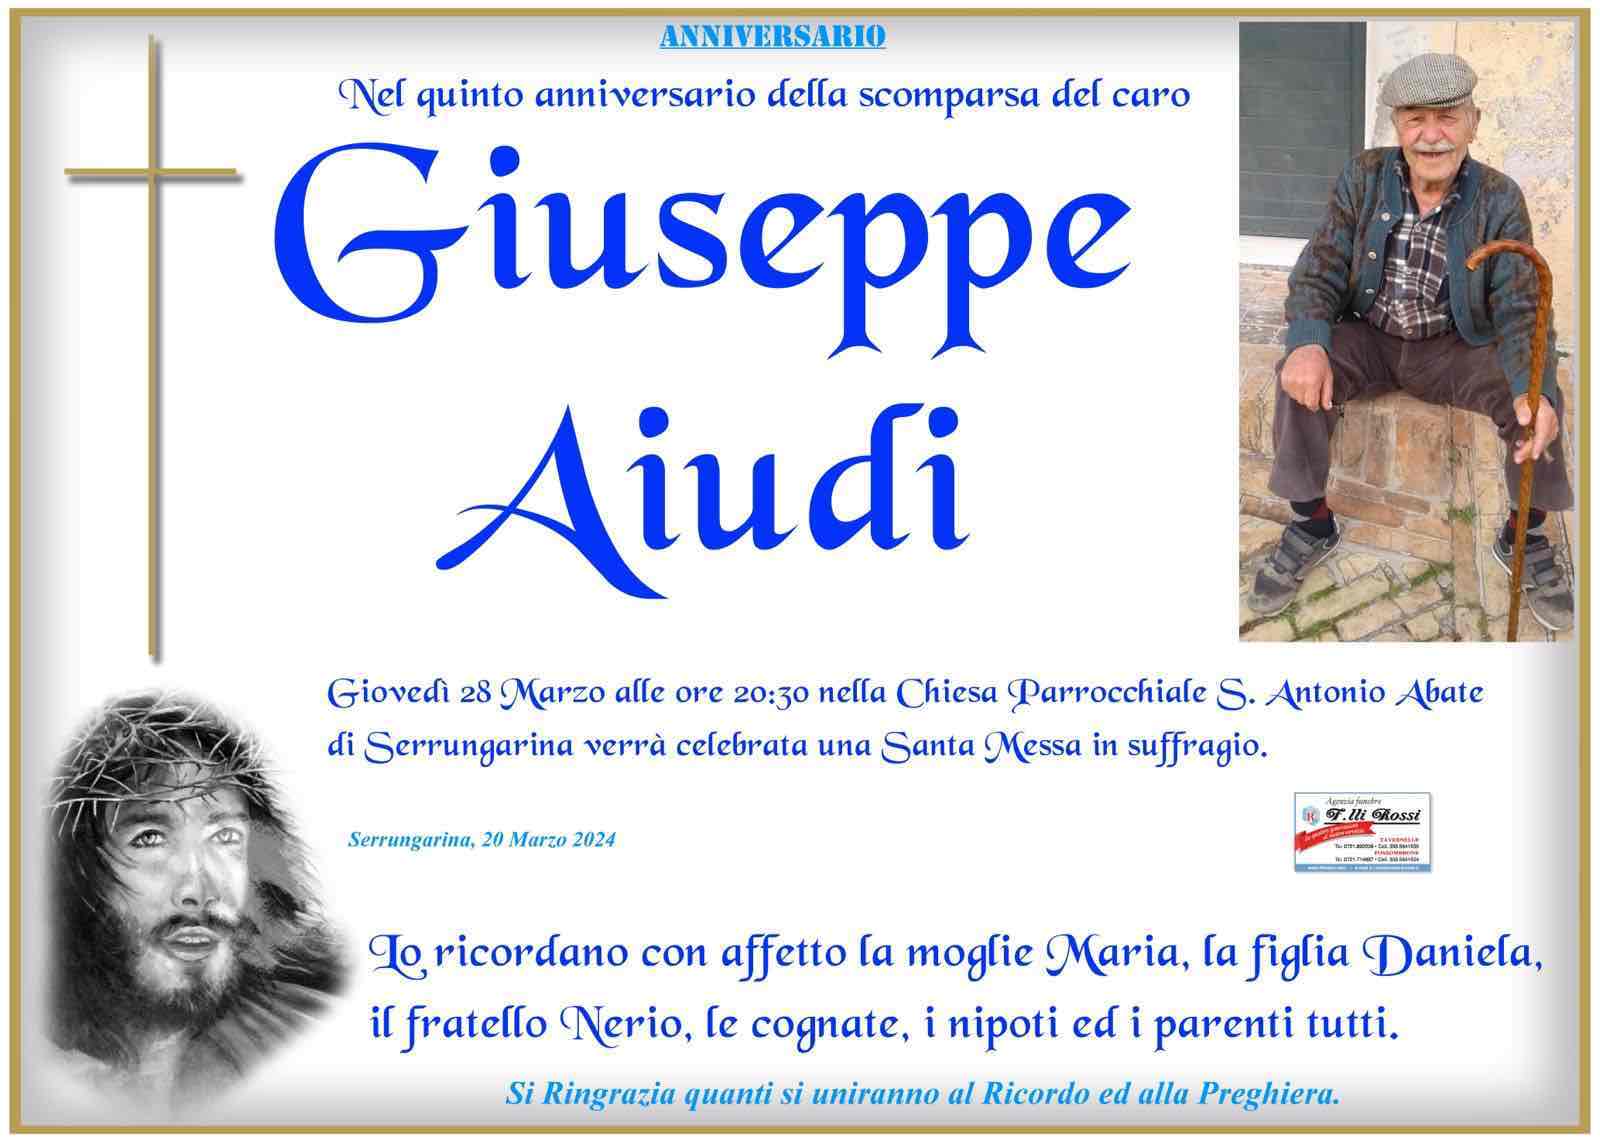 Giuseppe Aiudi